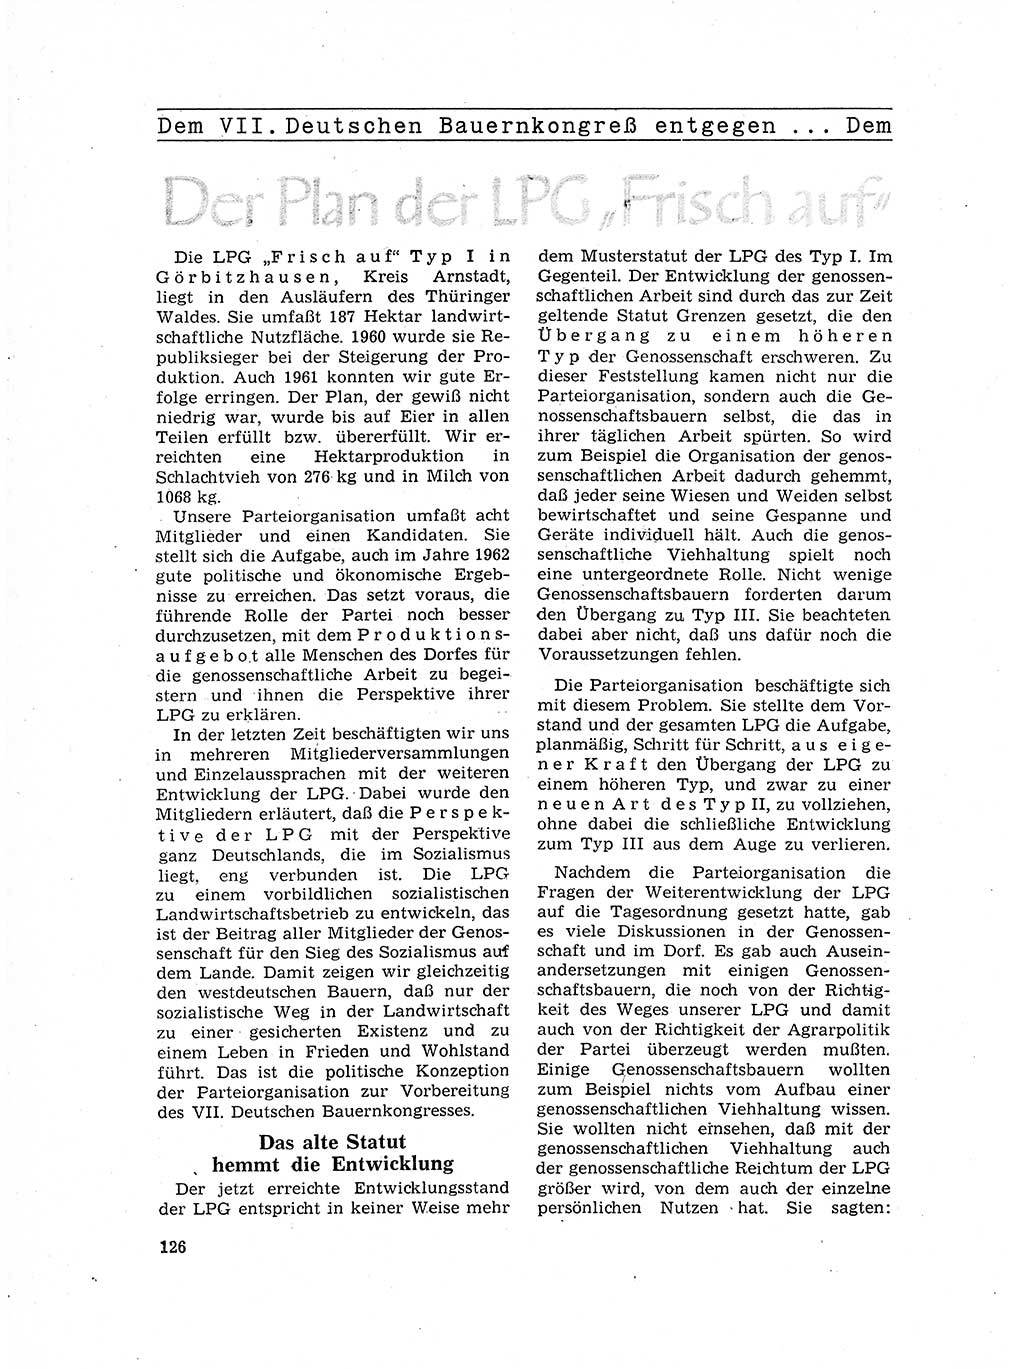 Neuer Weg (NW), Organ des Zentralkomitees (ZK) der SED (Sozialistische Einheitspartei Deutschlands) für Fragen des Parteilebens, 17. Jahrgang [Deutsche Demokratische Republik (DDR)] 1962, Seite 126 (NW ZK SED DDR 1962, S. 126)